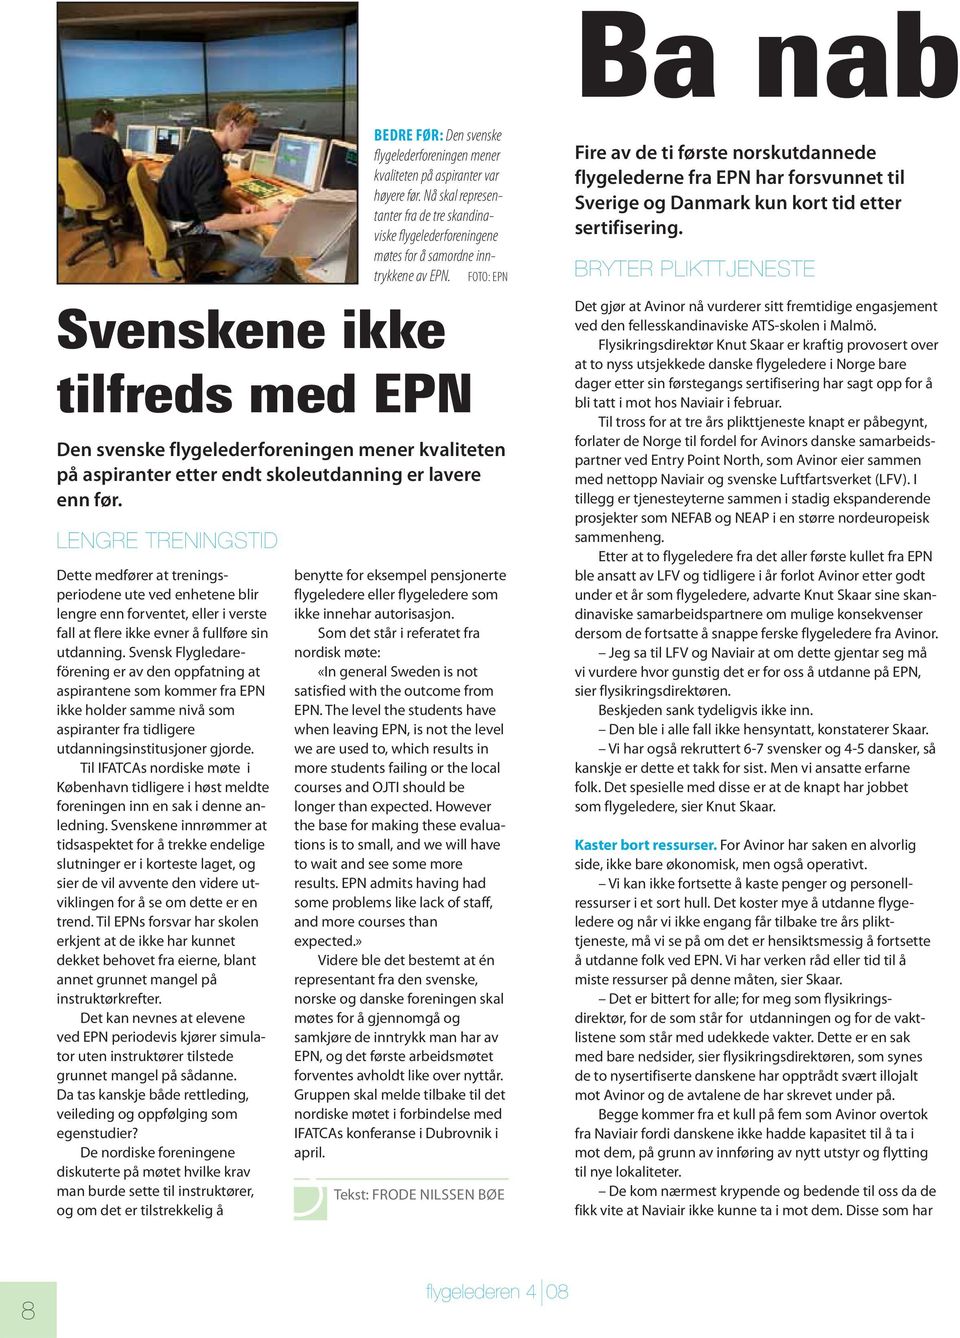 Svensk Flygledareförening er av den oppfatning at aspirantene som kommer fra EPN ikke holder samme nivå som aspiranter fra tidligere utdanningsinstitusjoner gjorde.